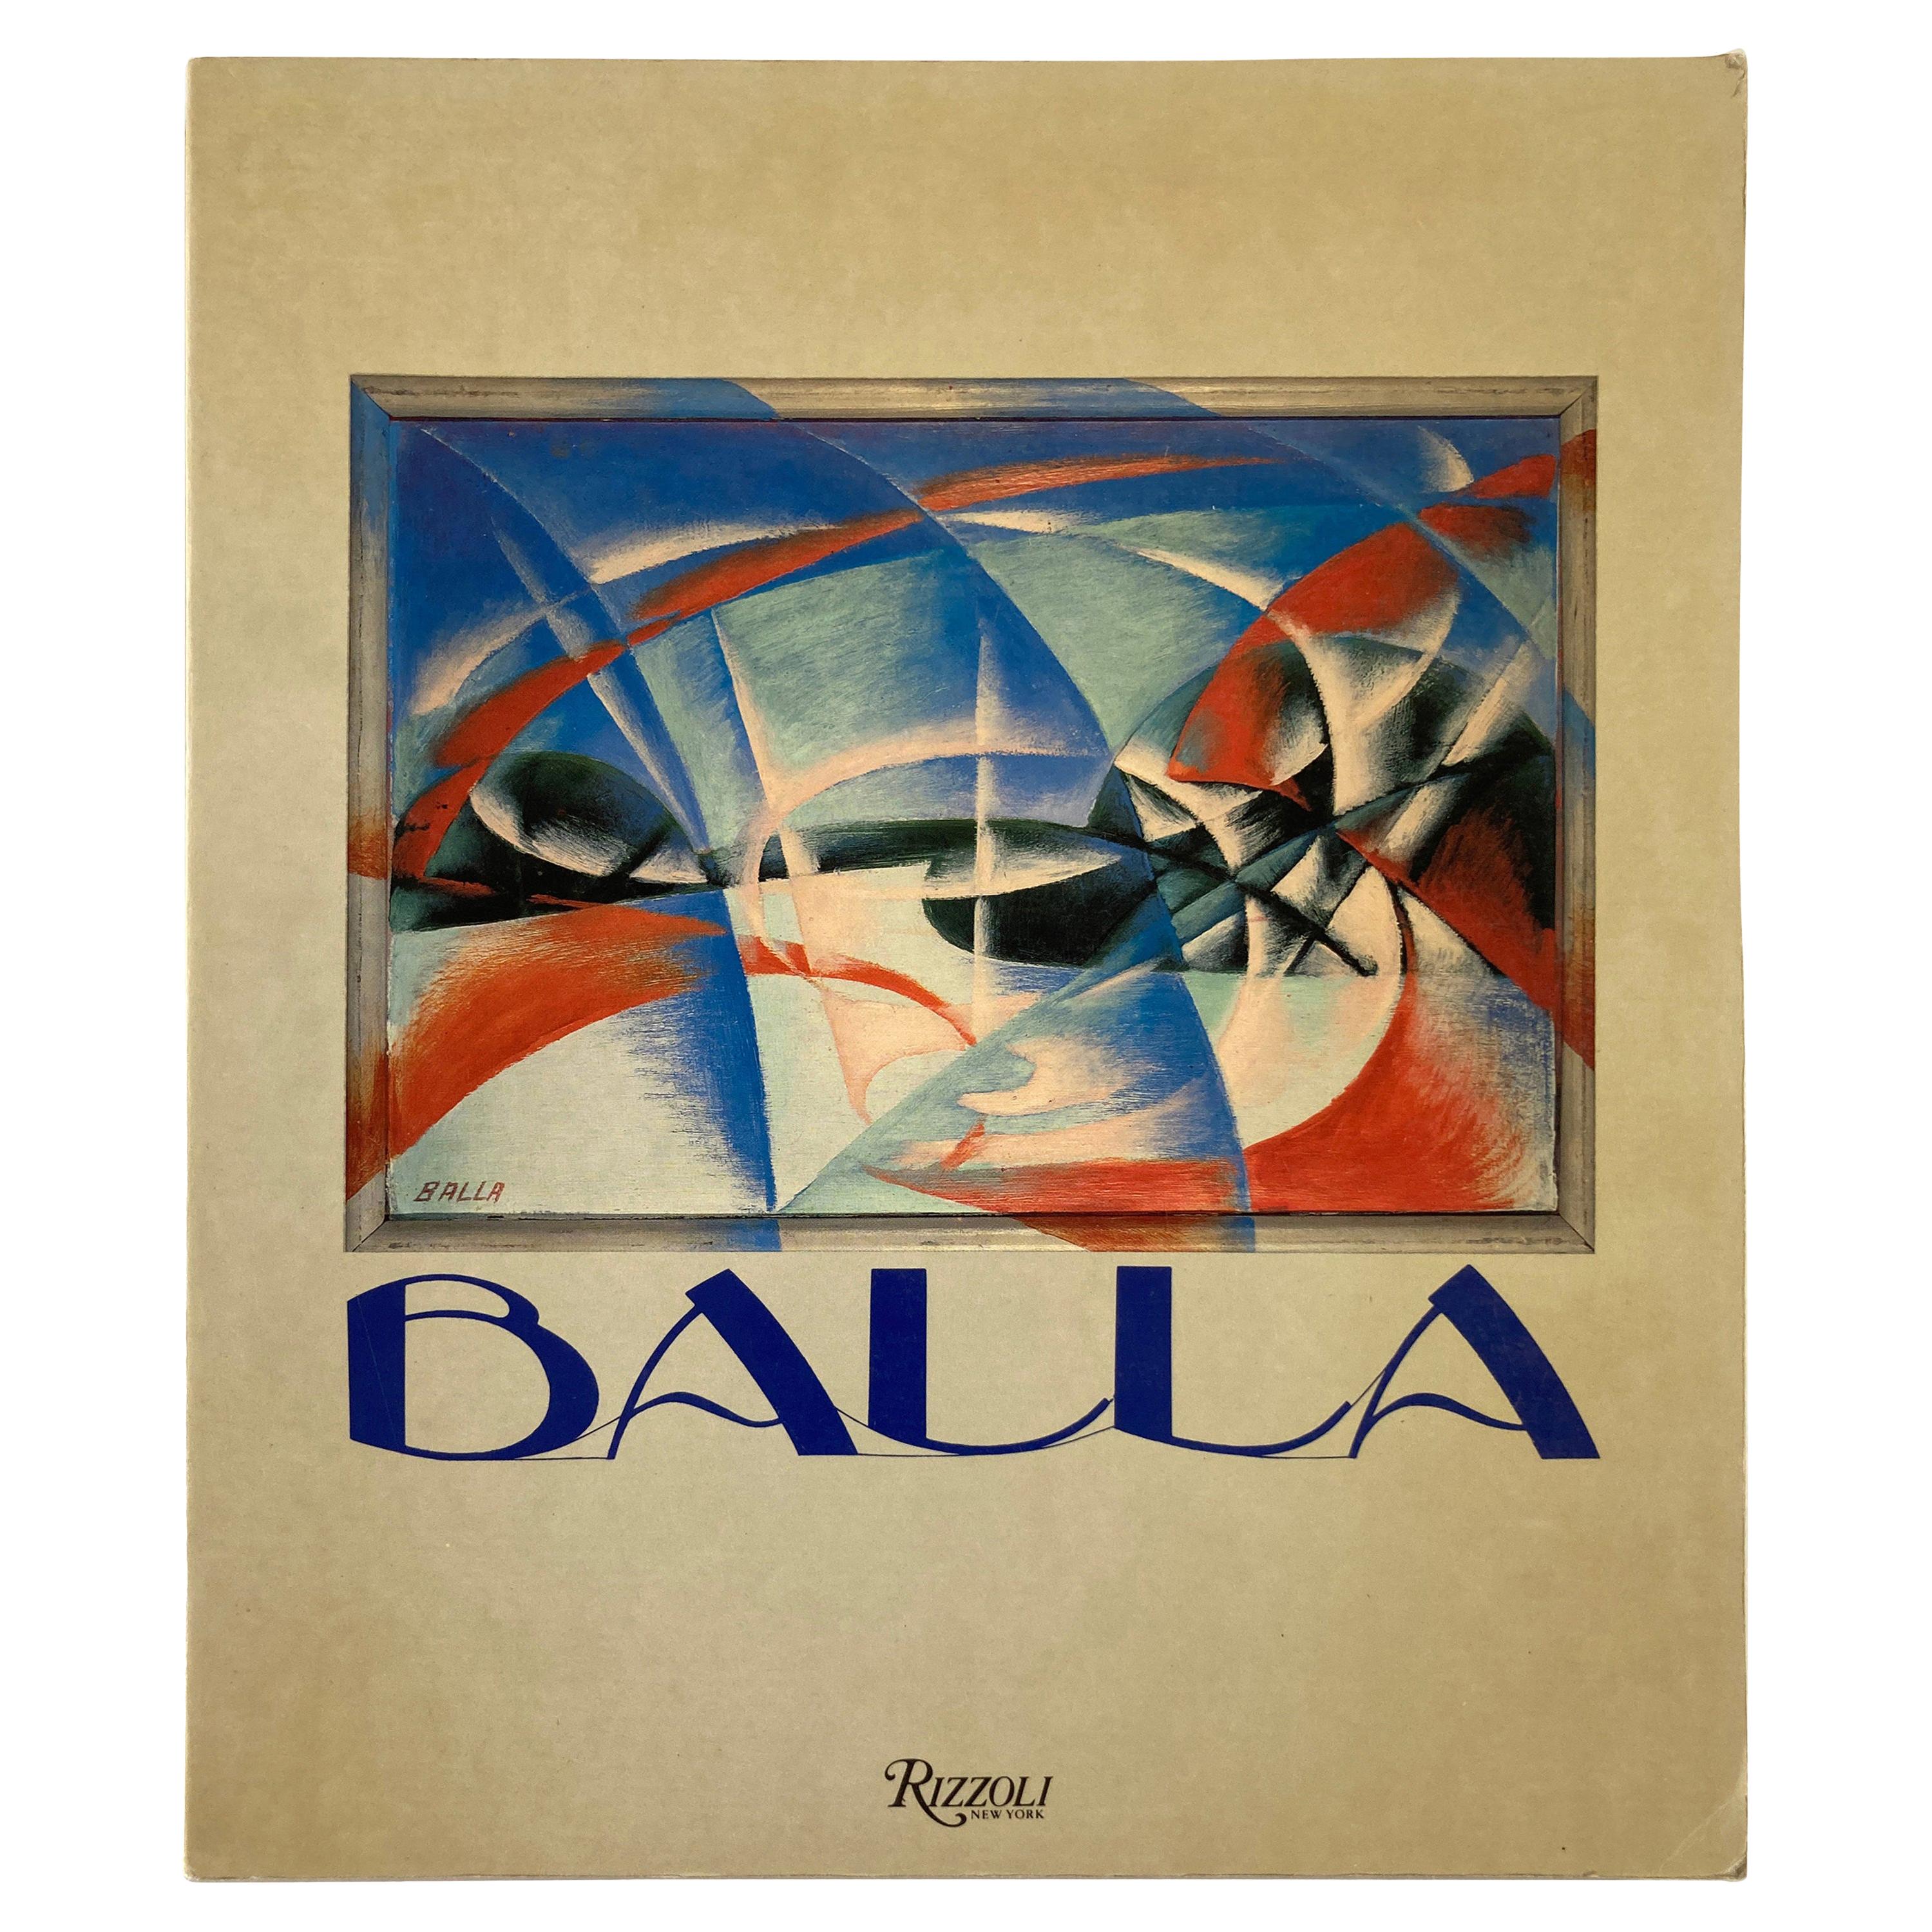 Balla by Maurizio Fagiolo Dell'Arco Coffee Table Book